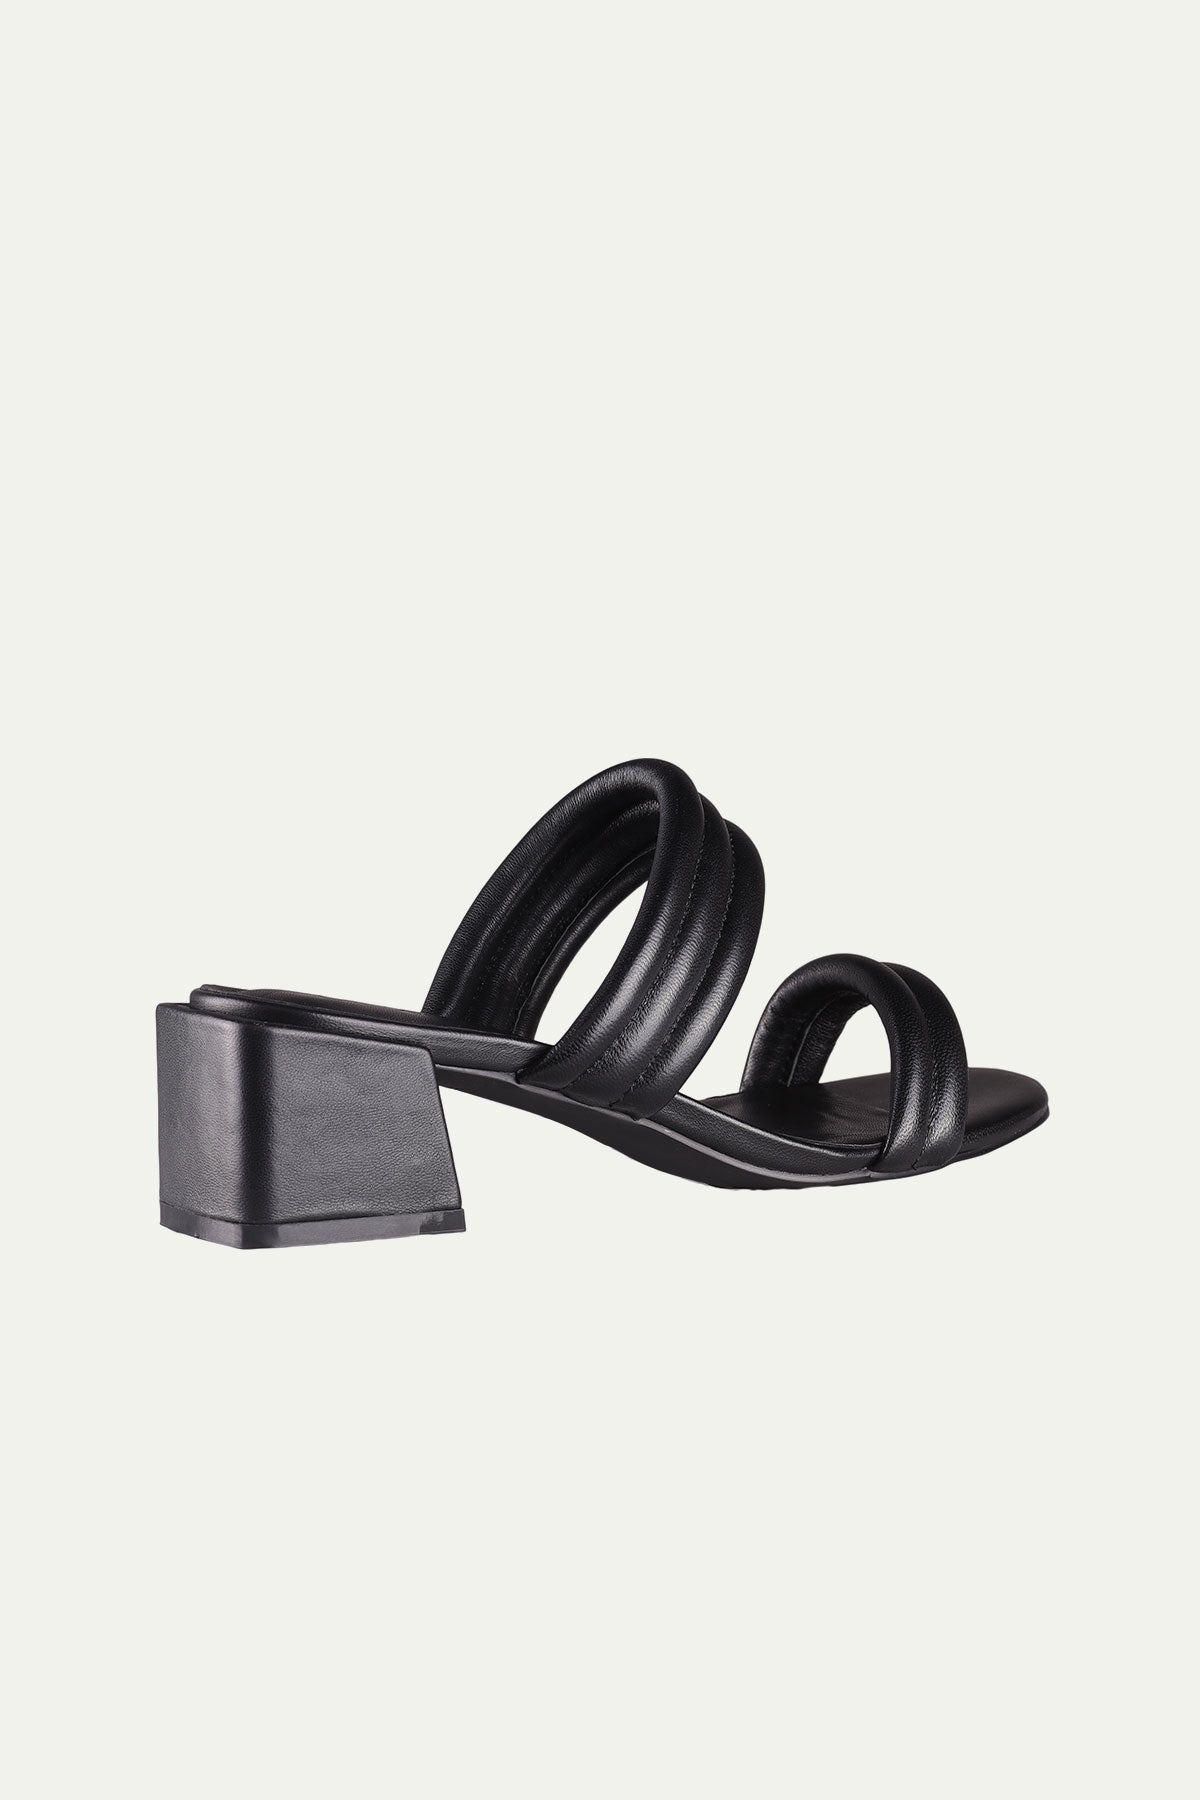 נעלי Ariel בצבע שחור - Dolce Vita